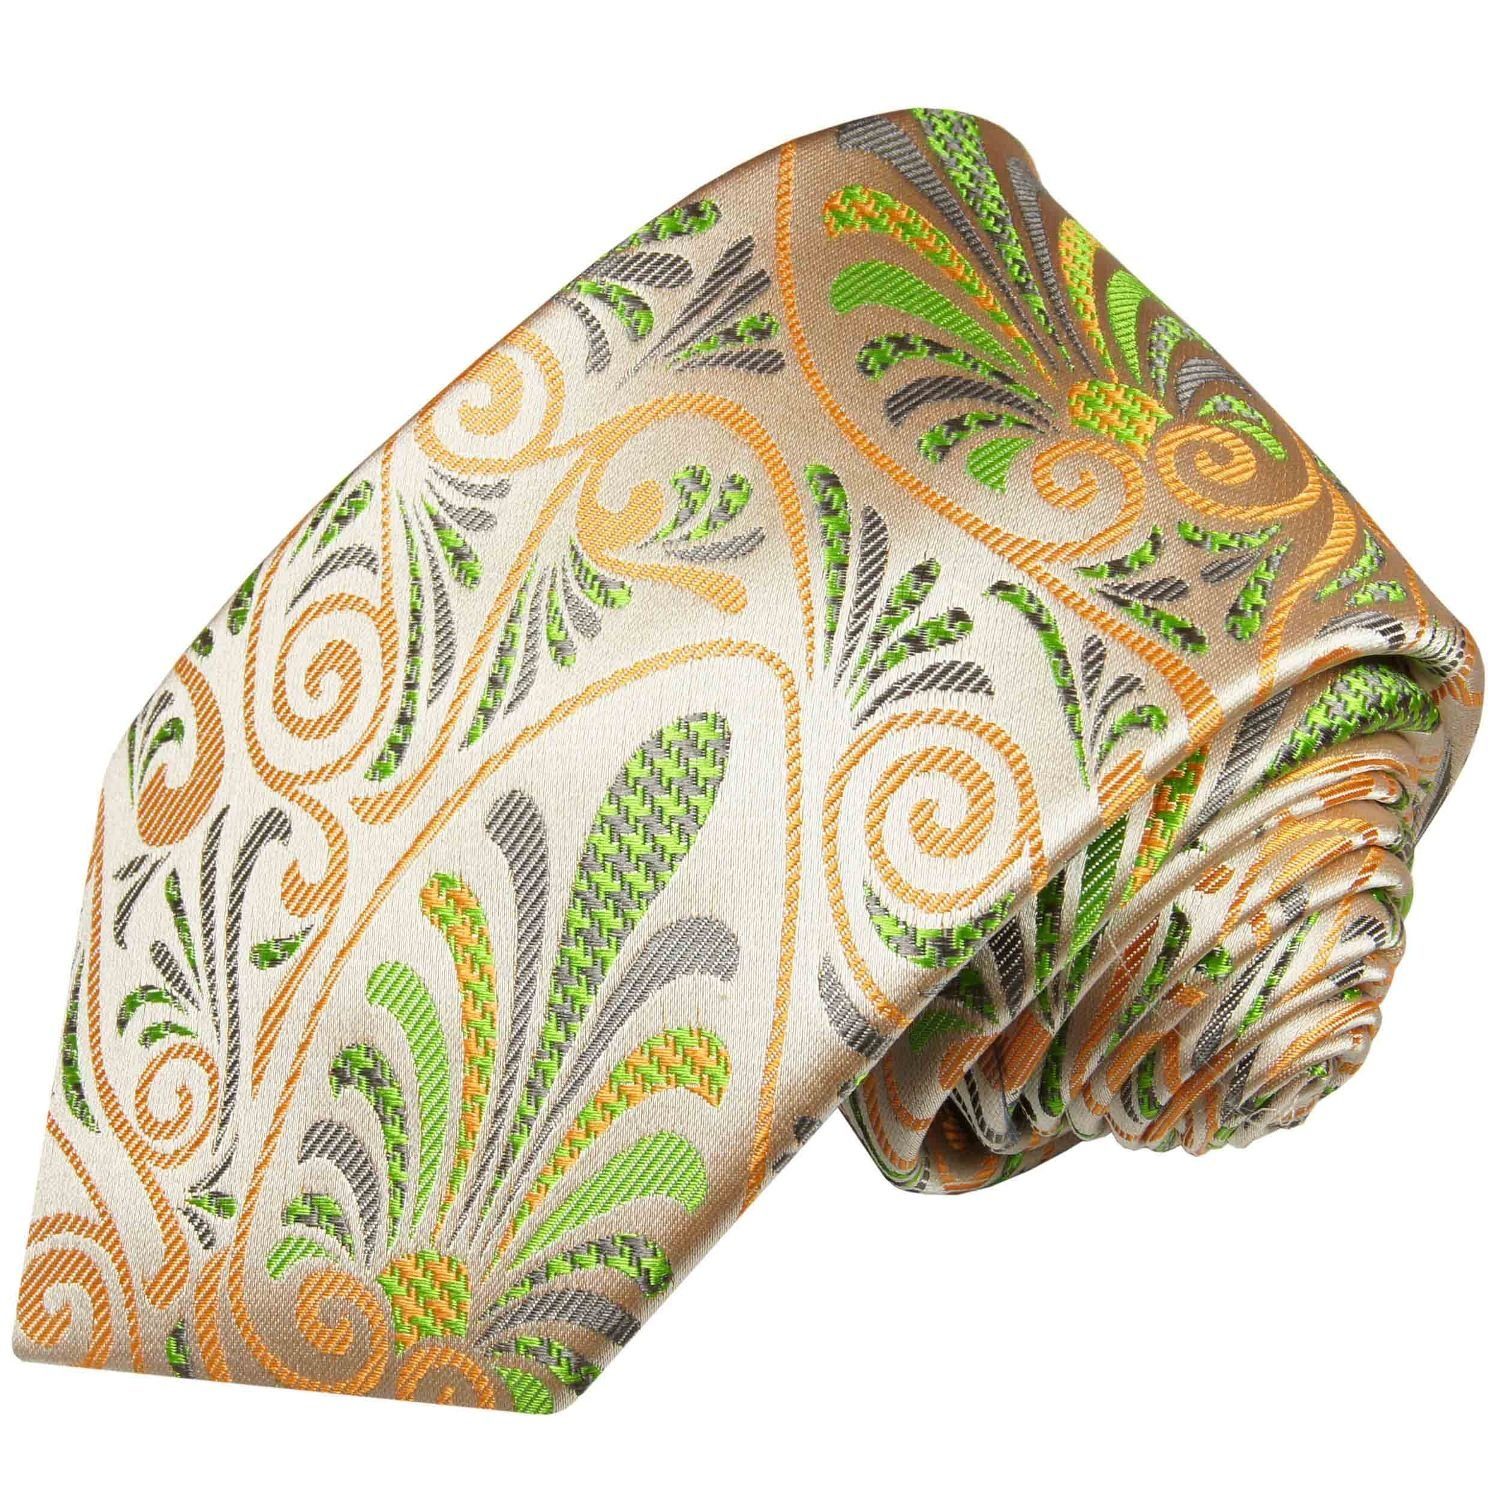 Paul Malone Krawatte Designer Seidenkrawatte Herren Schlips modern bunt floral 100% Seide Breit (8cm), orange grün 490